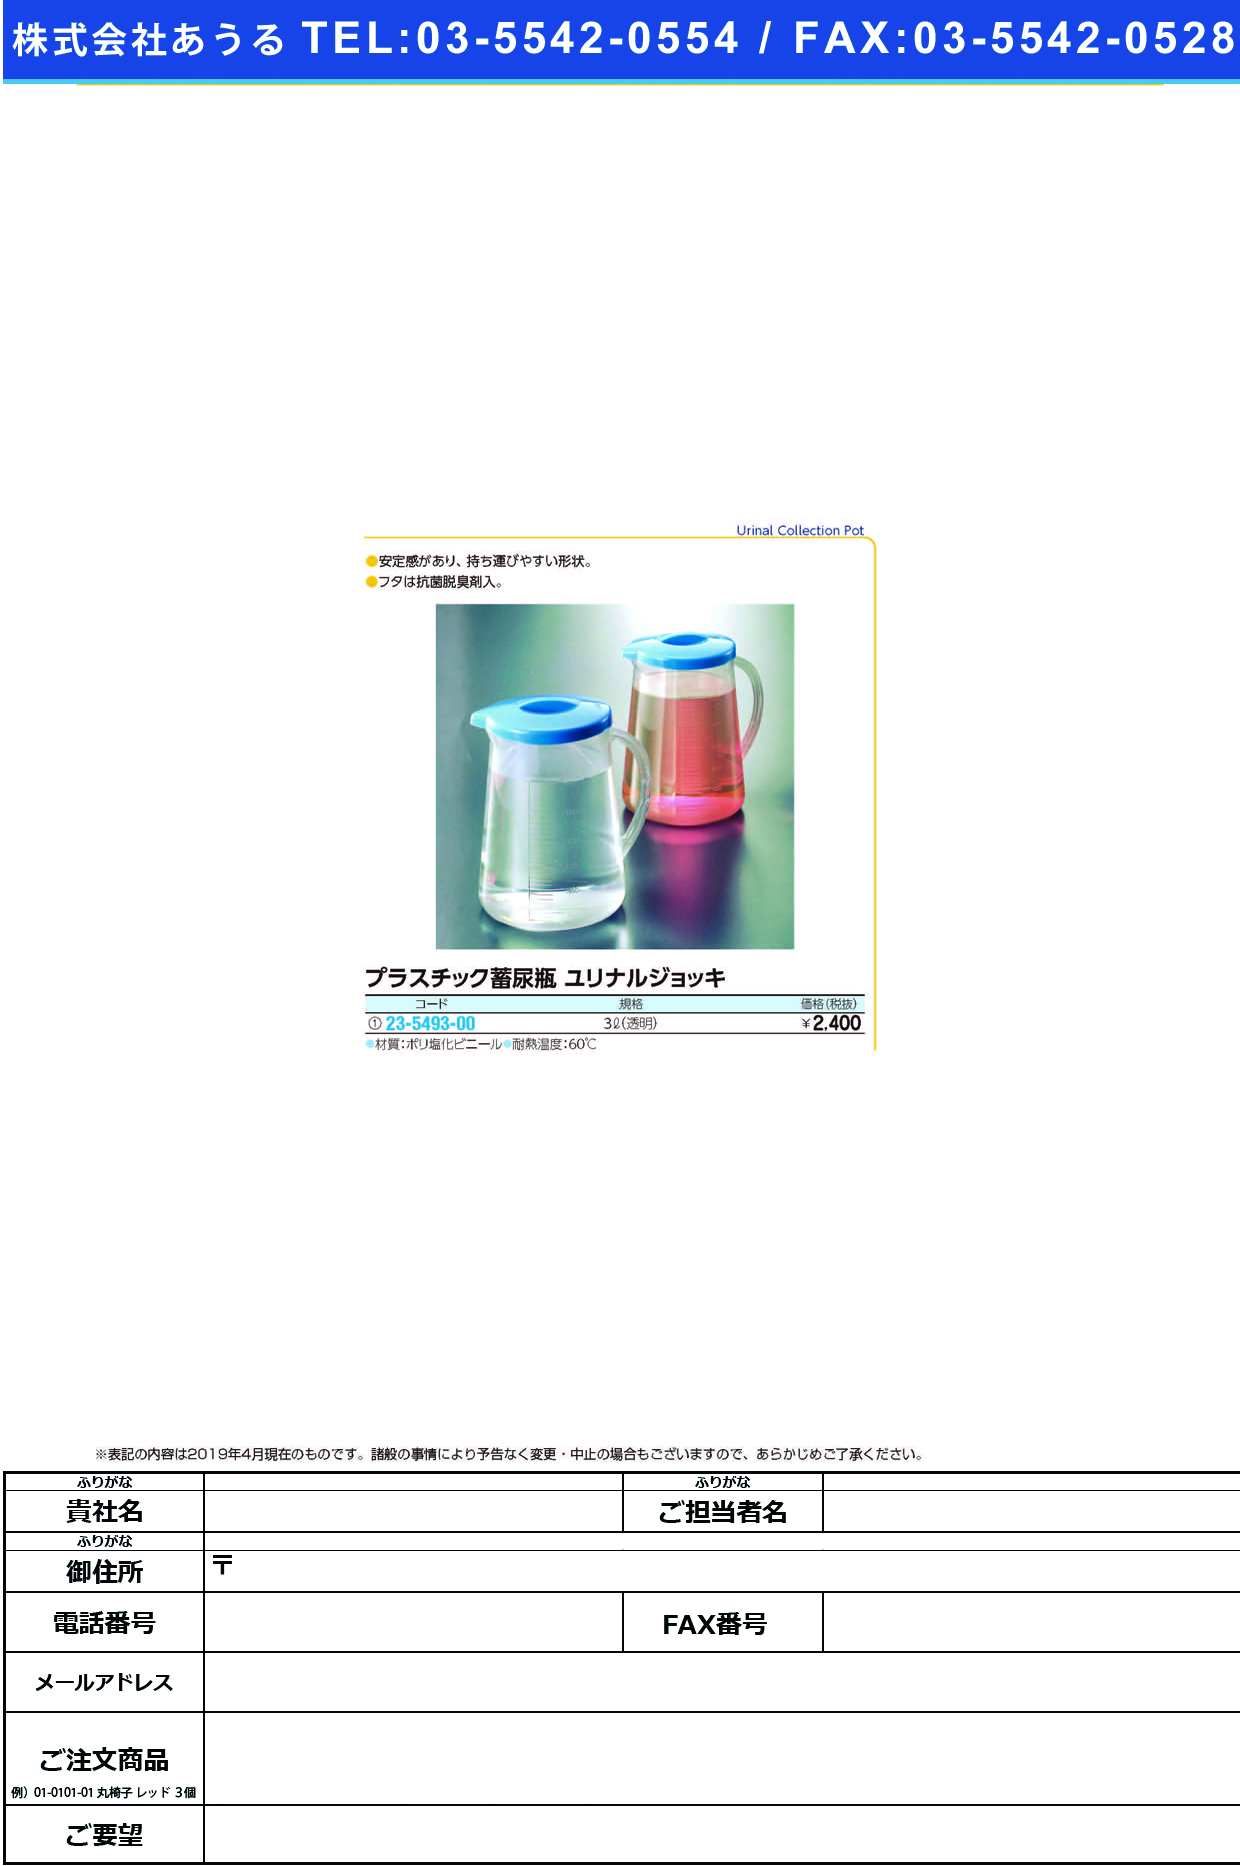 (23-5493-00)蓄尿瓶ユリナルジョッキ 3000ML(ｴﾝﾋﾞｾｲ) ﾁｸﾆｮｳﾋﾞﾝﾕﾘﾅﾙｼﾞｮｯｷ【1個単位】【2019年カタログ商品】